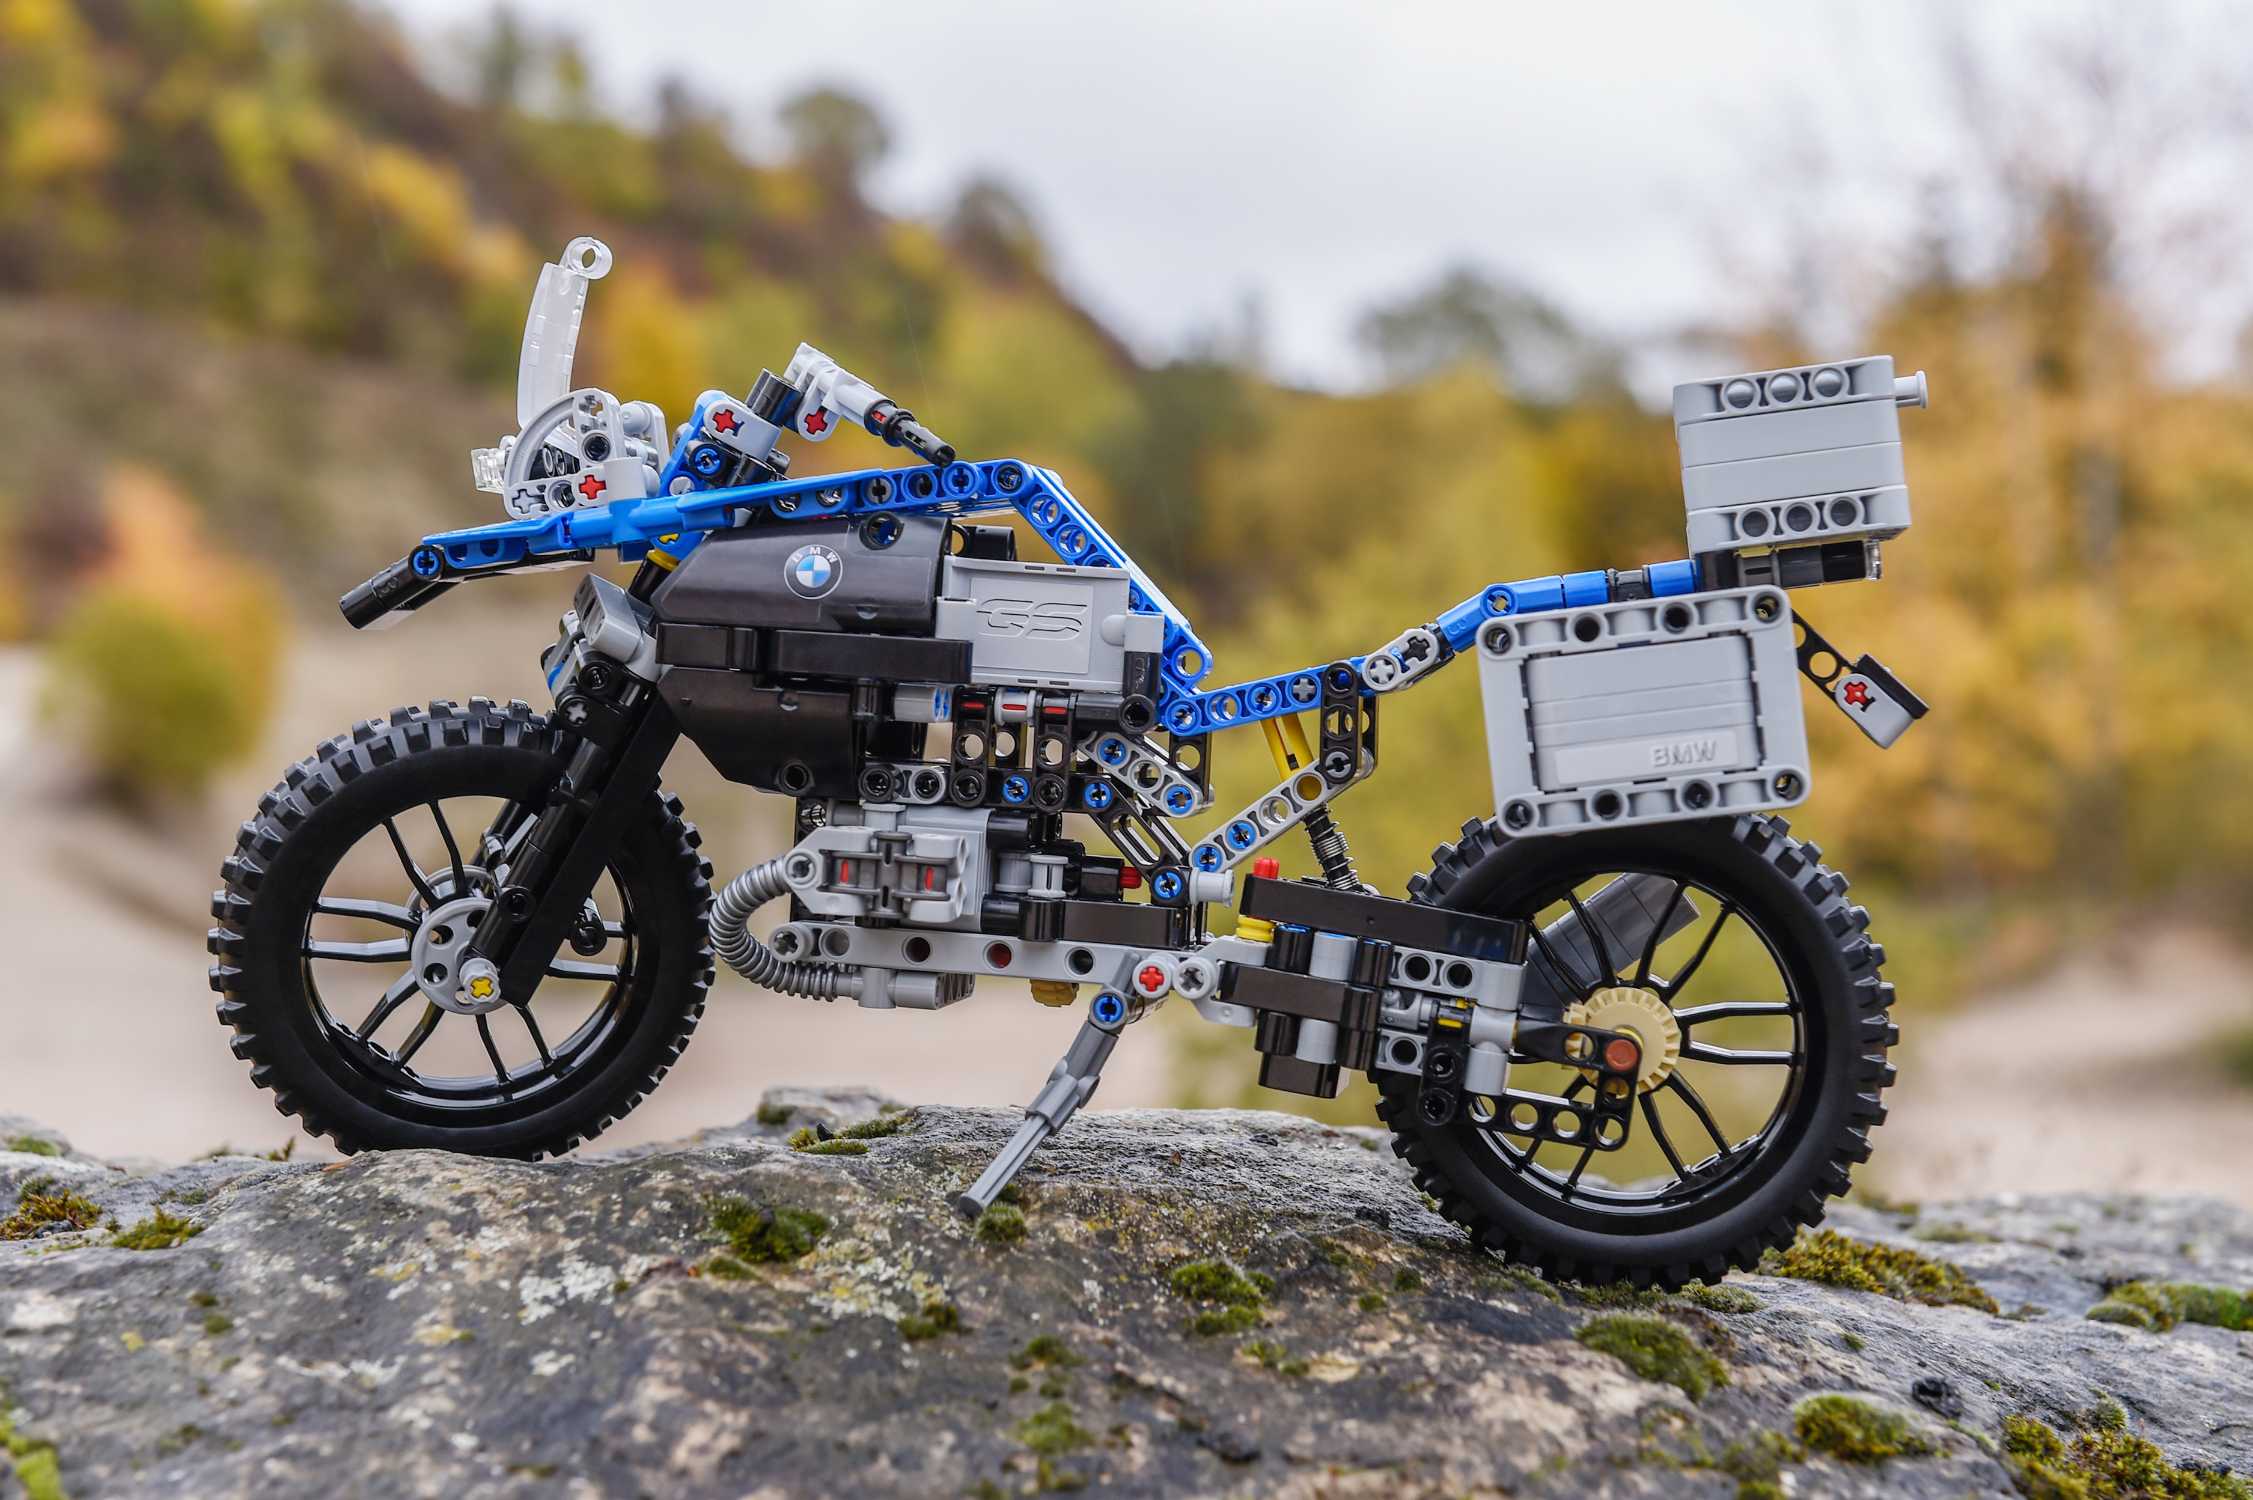 Lego Technic conjunto retirado 42063-BMW R 1200 GS Adventure-Nuevo Y Sellado